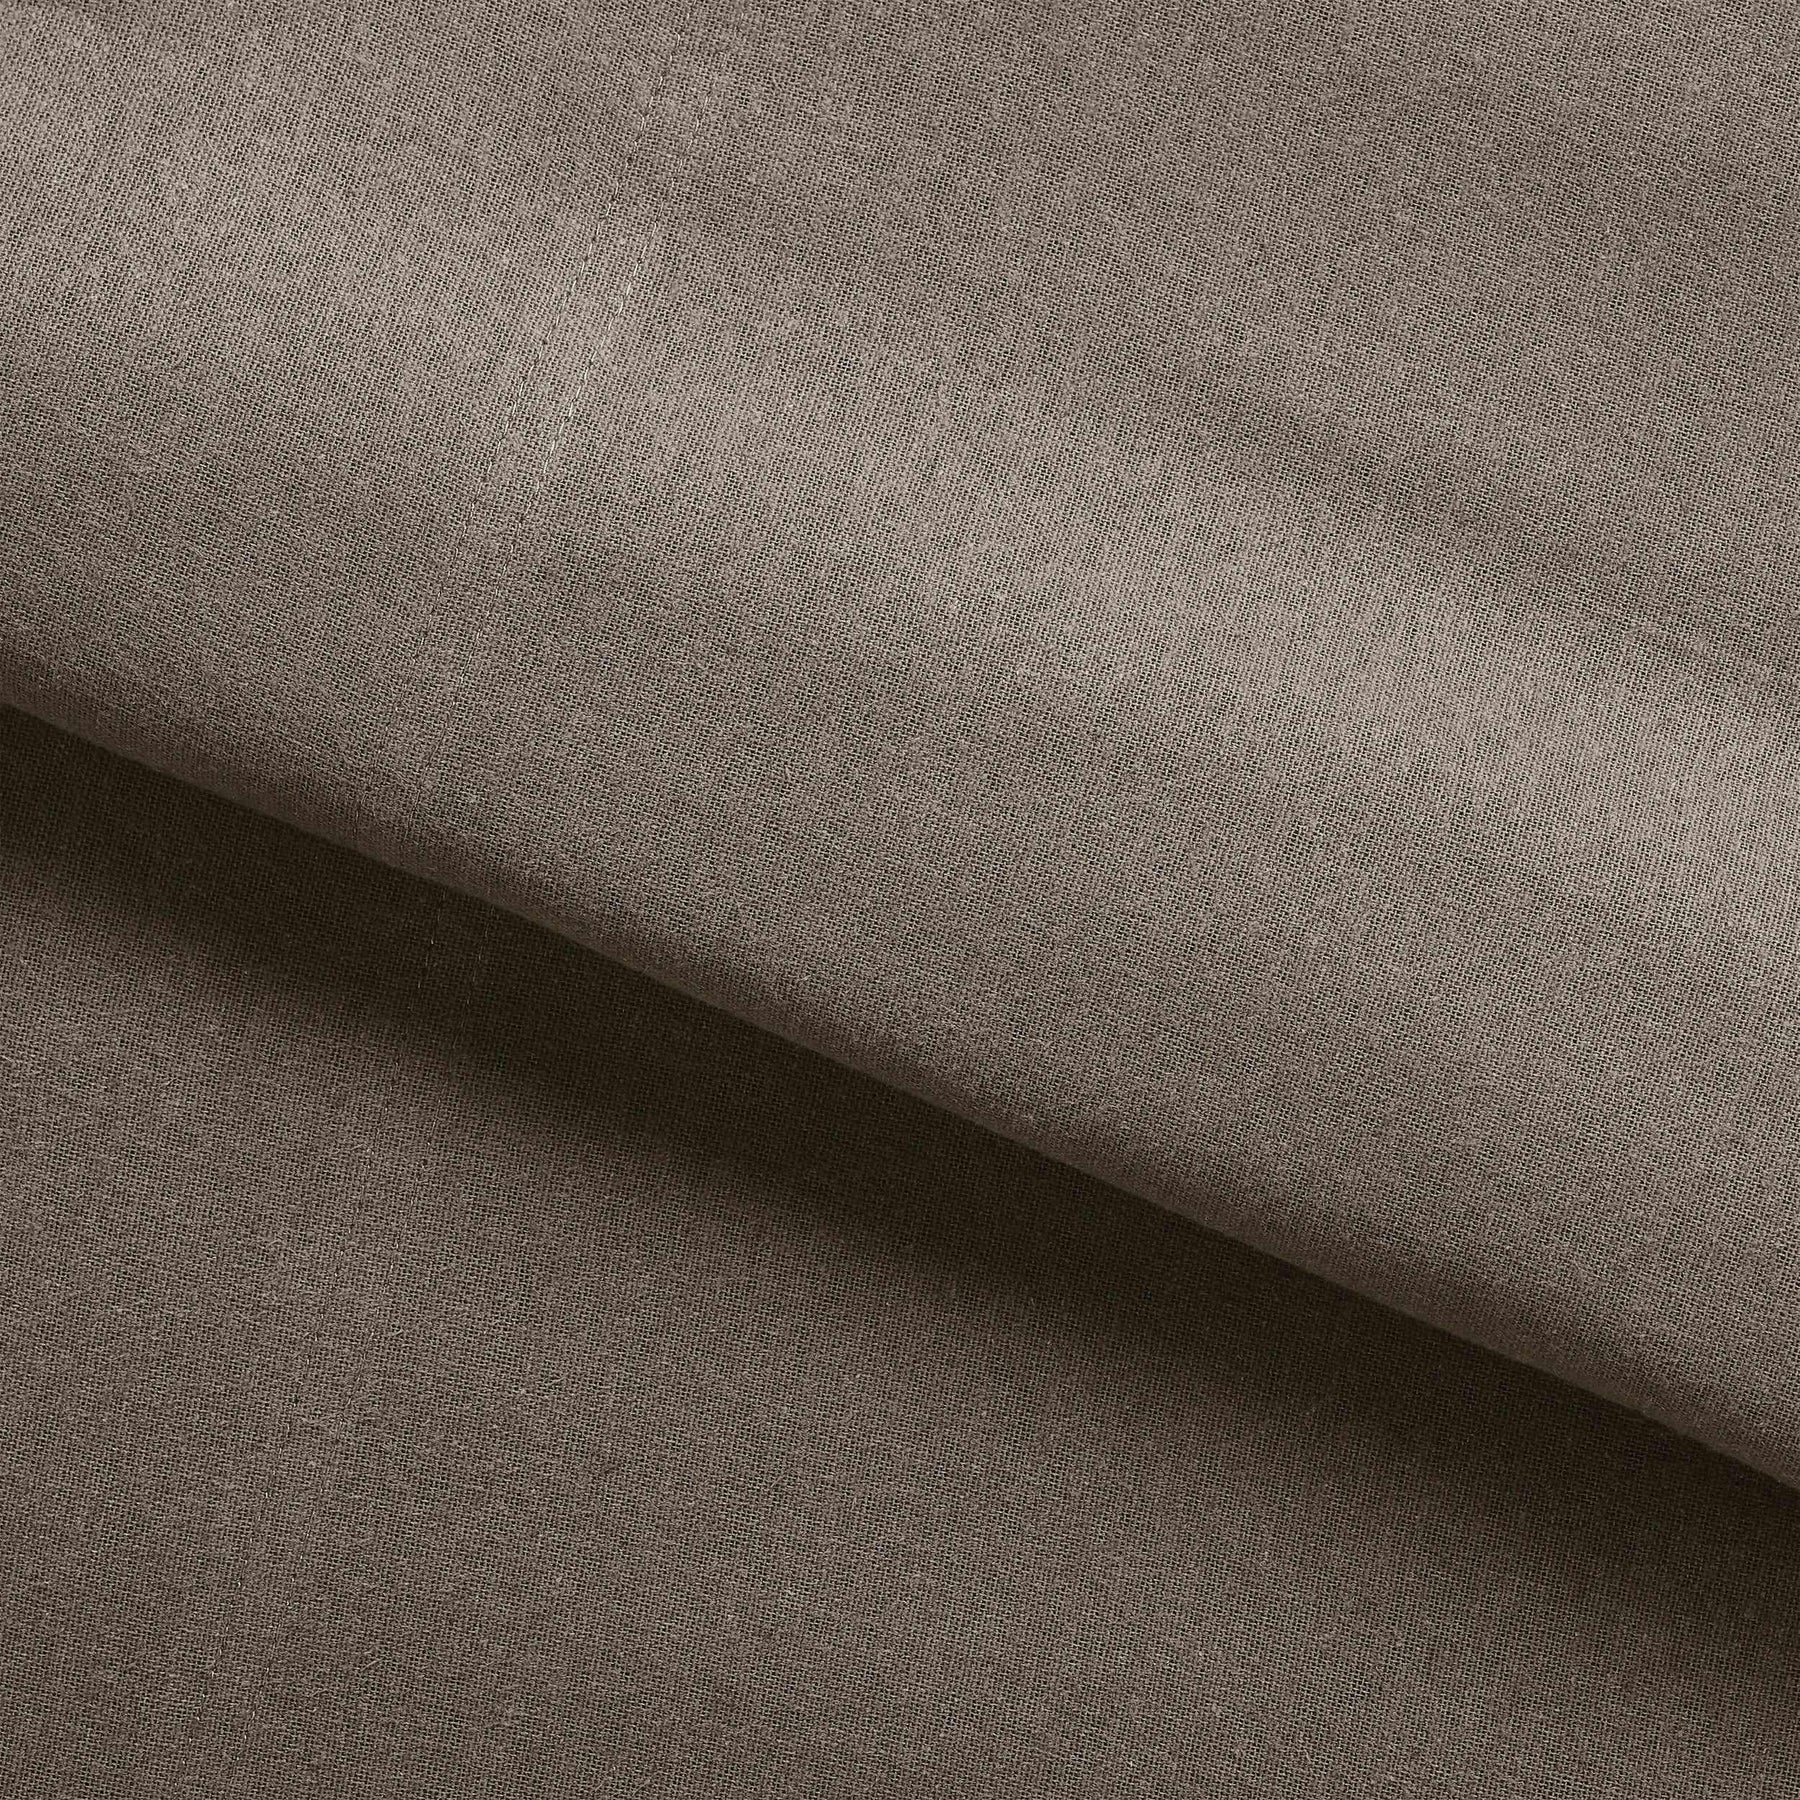  Superior Fleur-de-Lis Deep Pocket Cotton Flannel Sheet Set - Charcoal